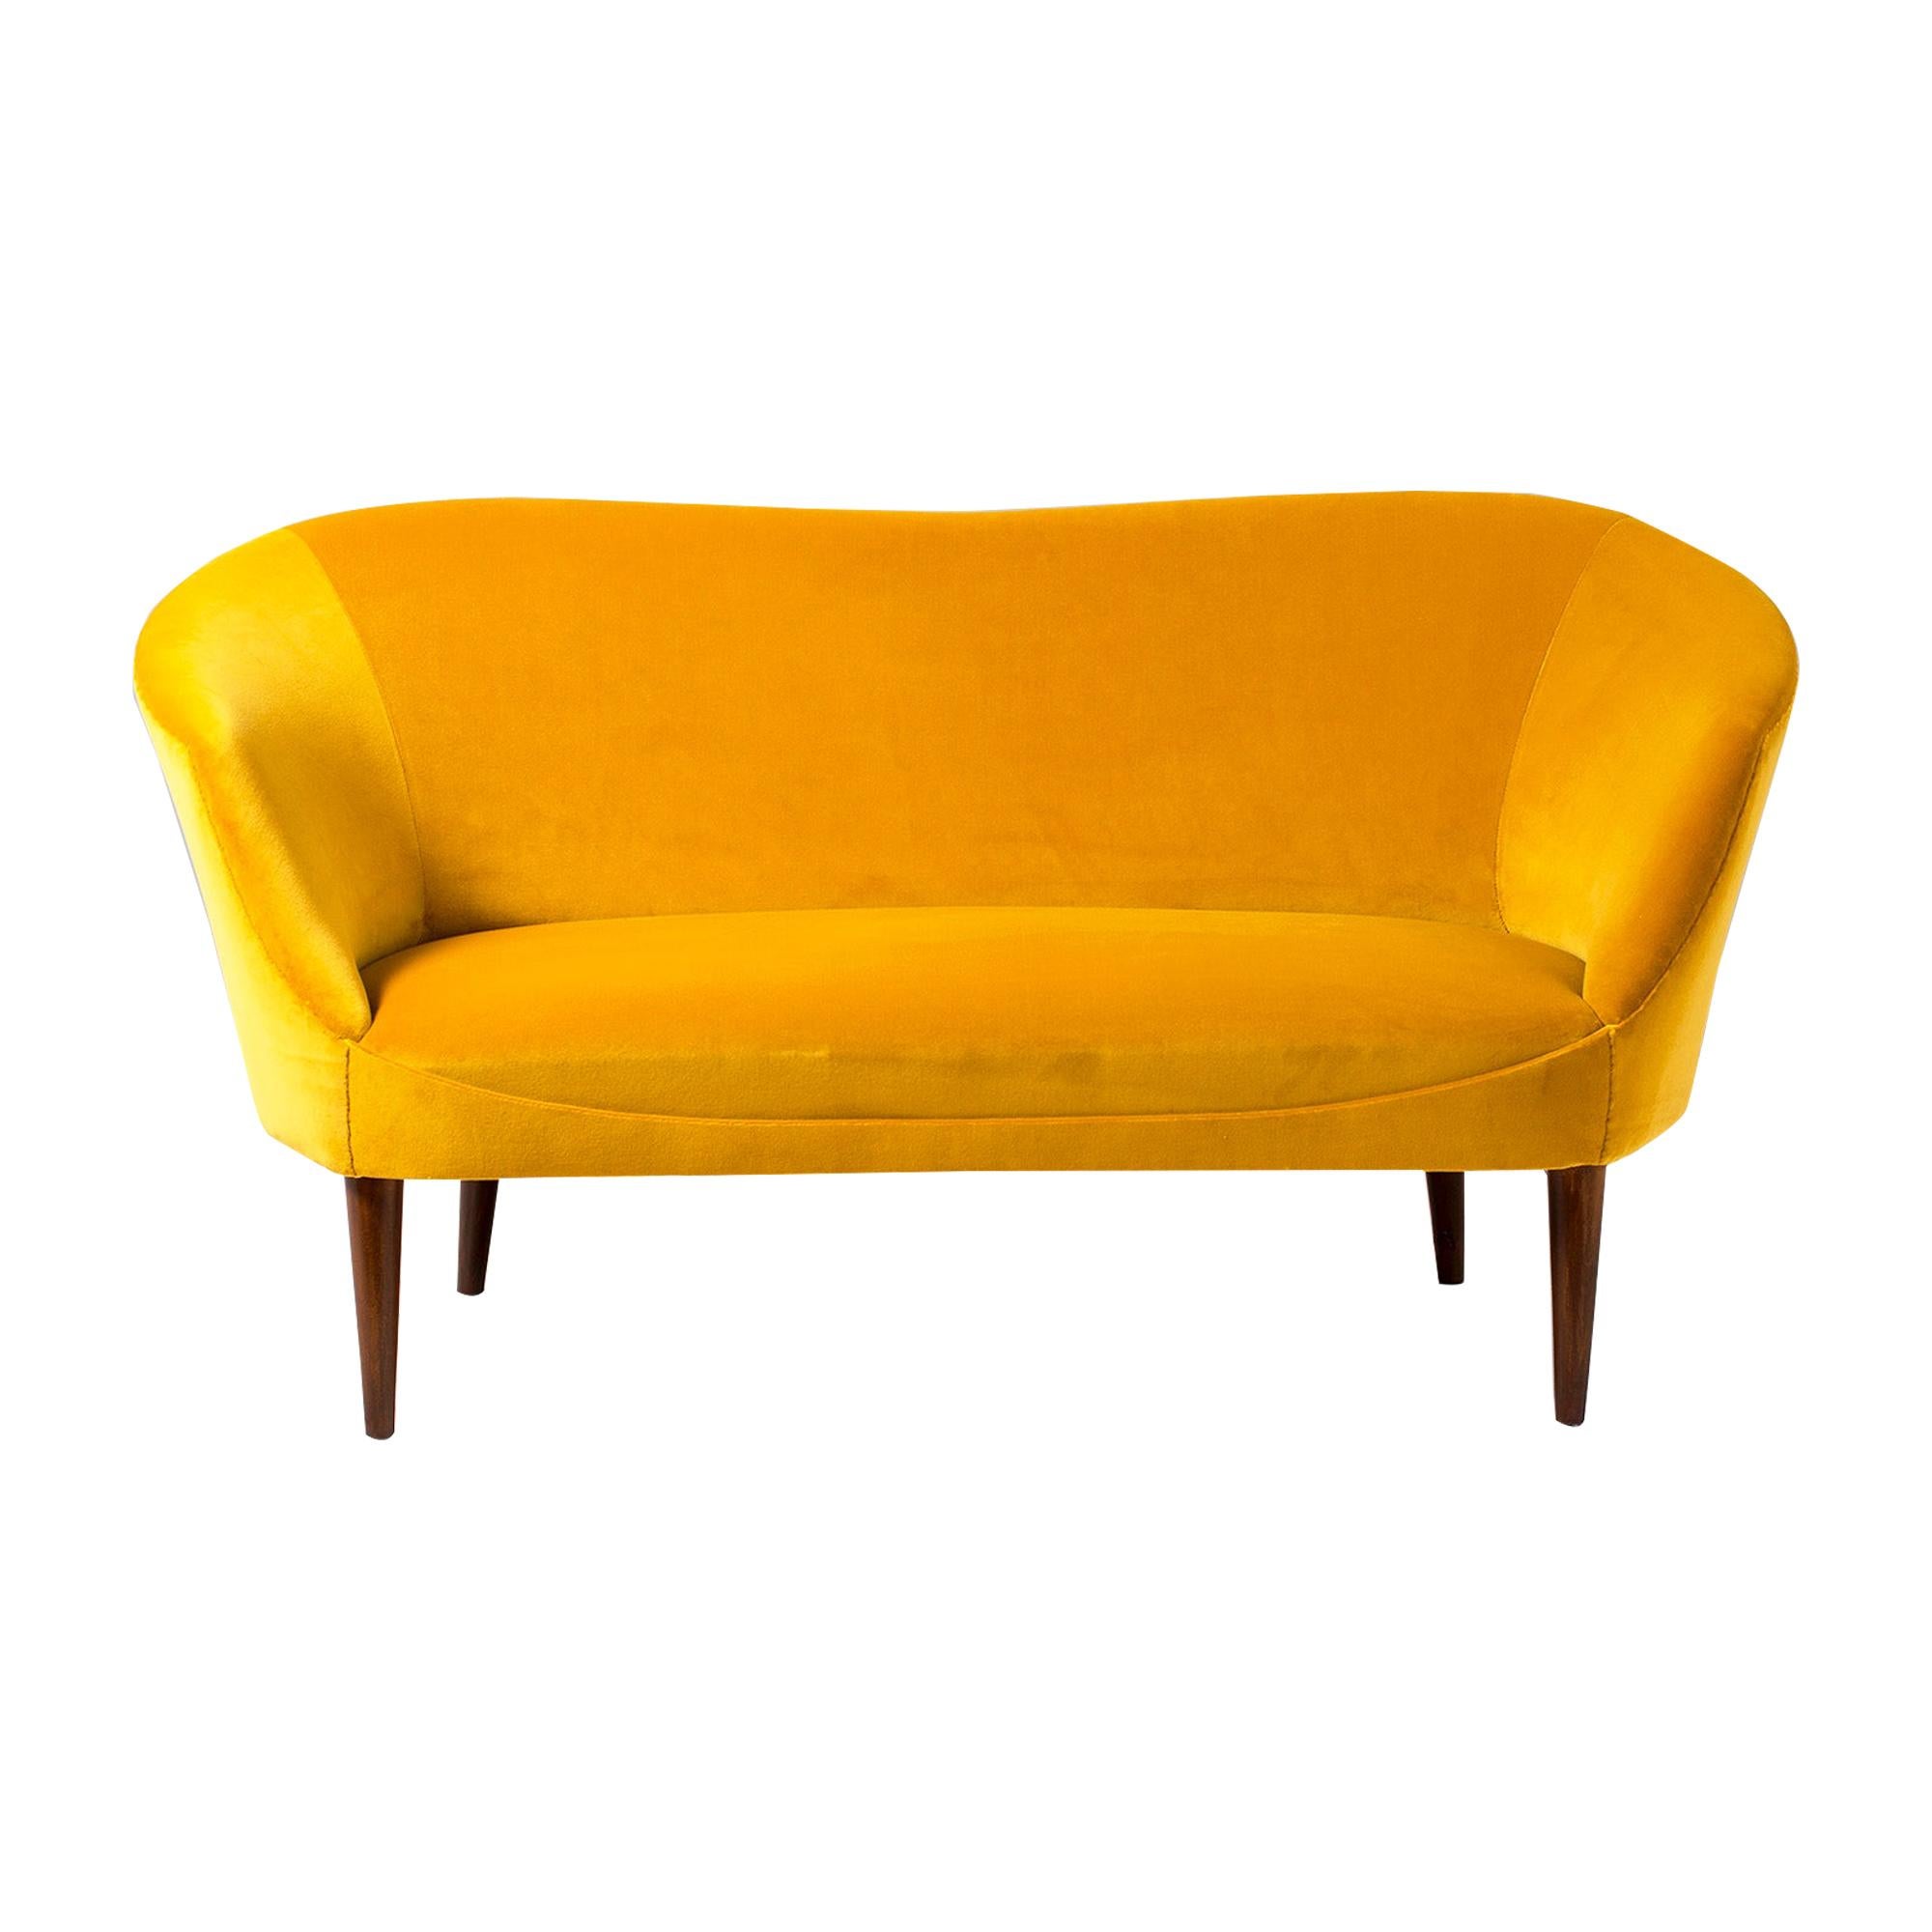 1940s Swedish Velvet Loveseat Sofa